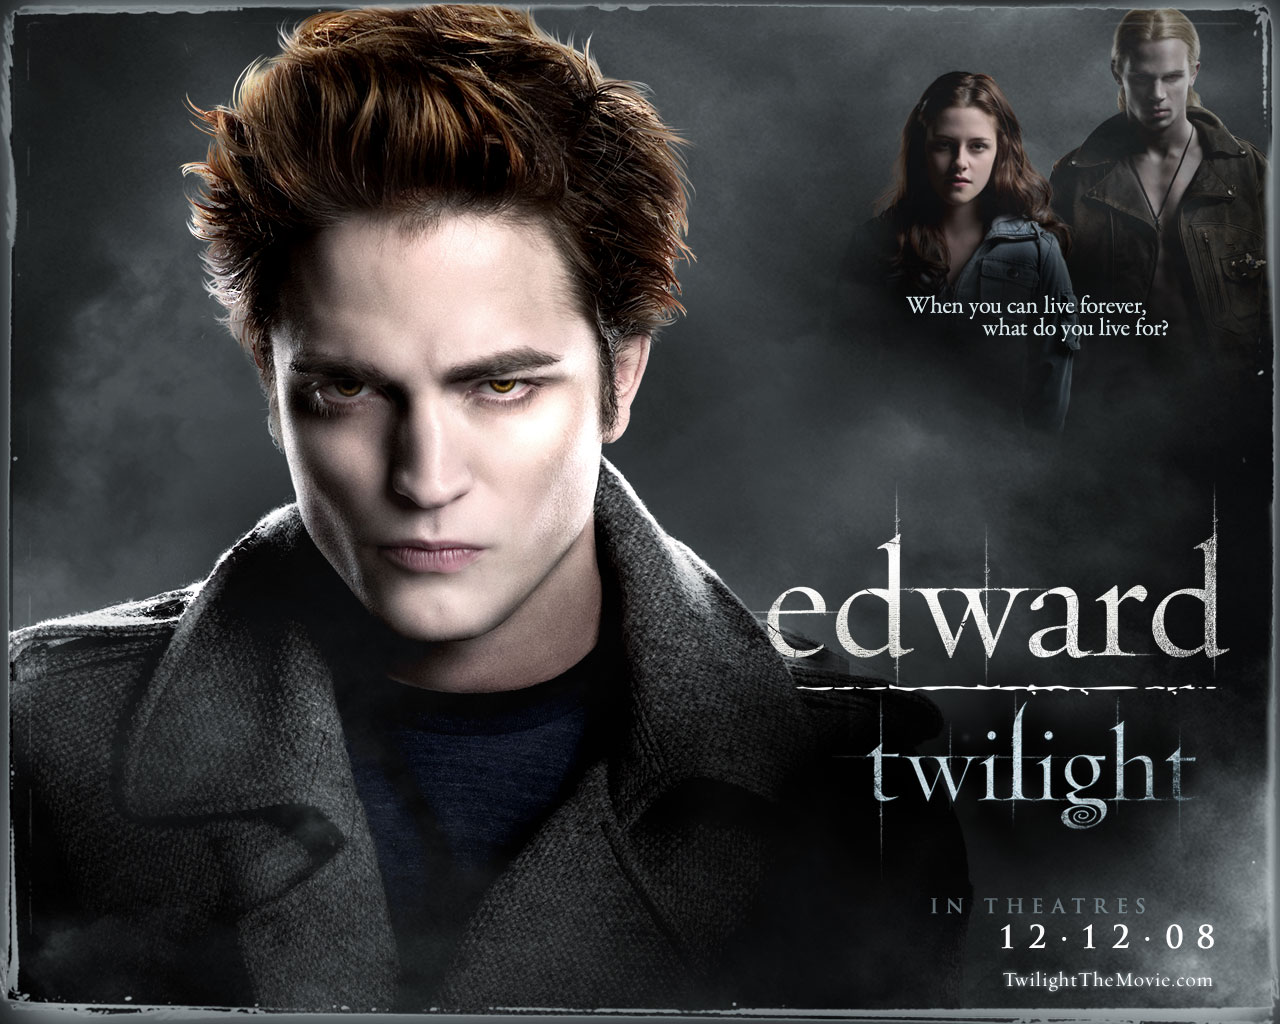 фильм,кино,сумерки,Twilight, 2008,Bella Swan,Edwar